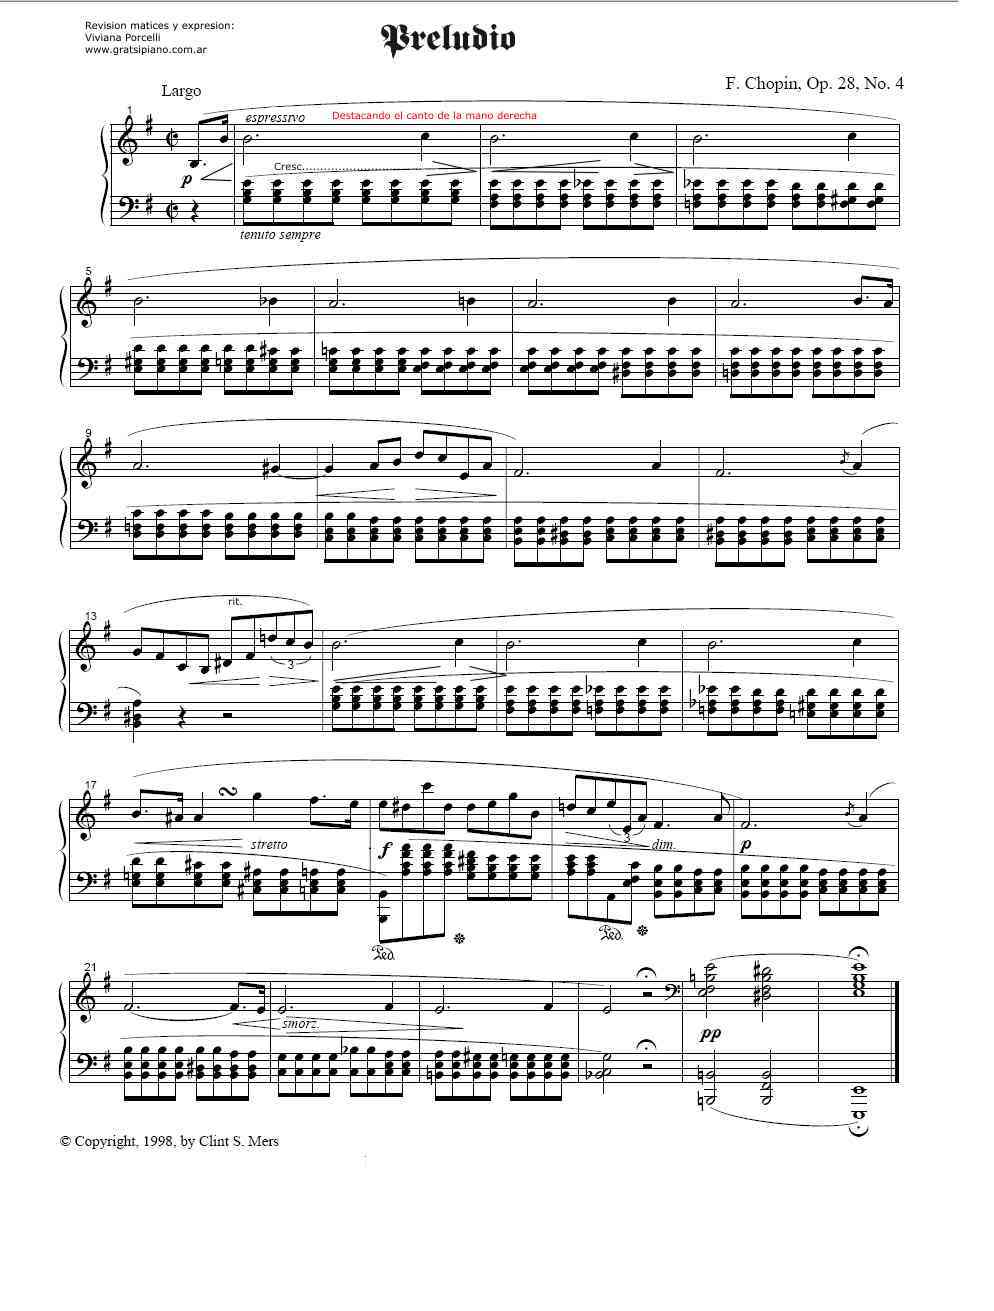 descargar partituras para piano gratis pdf maken